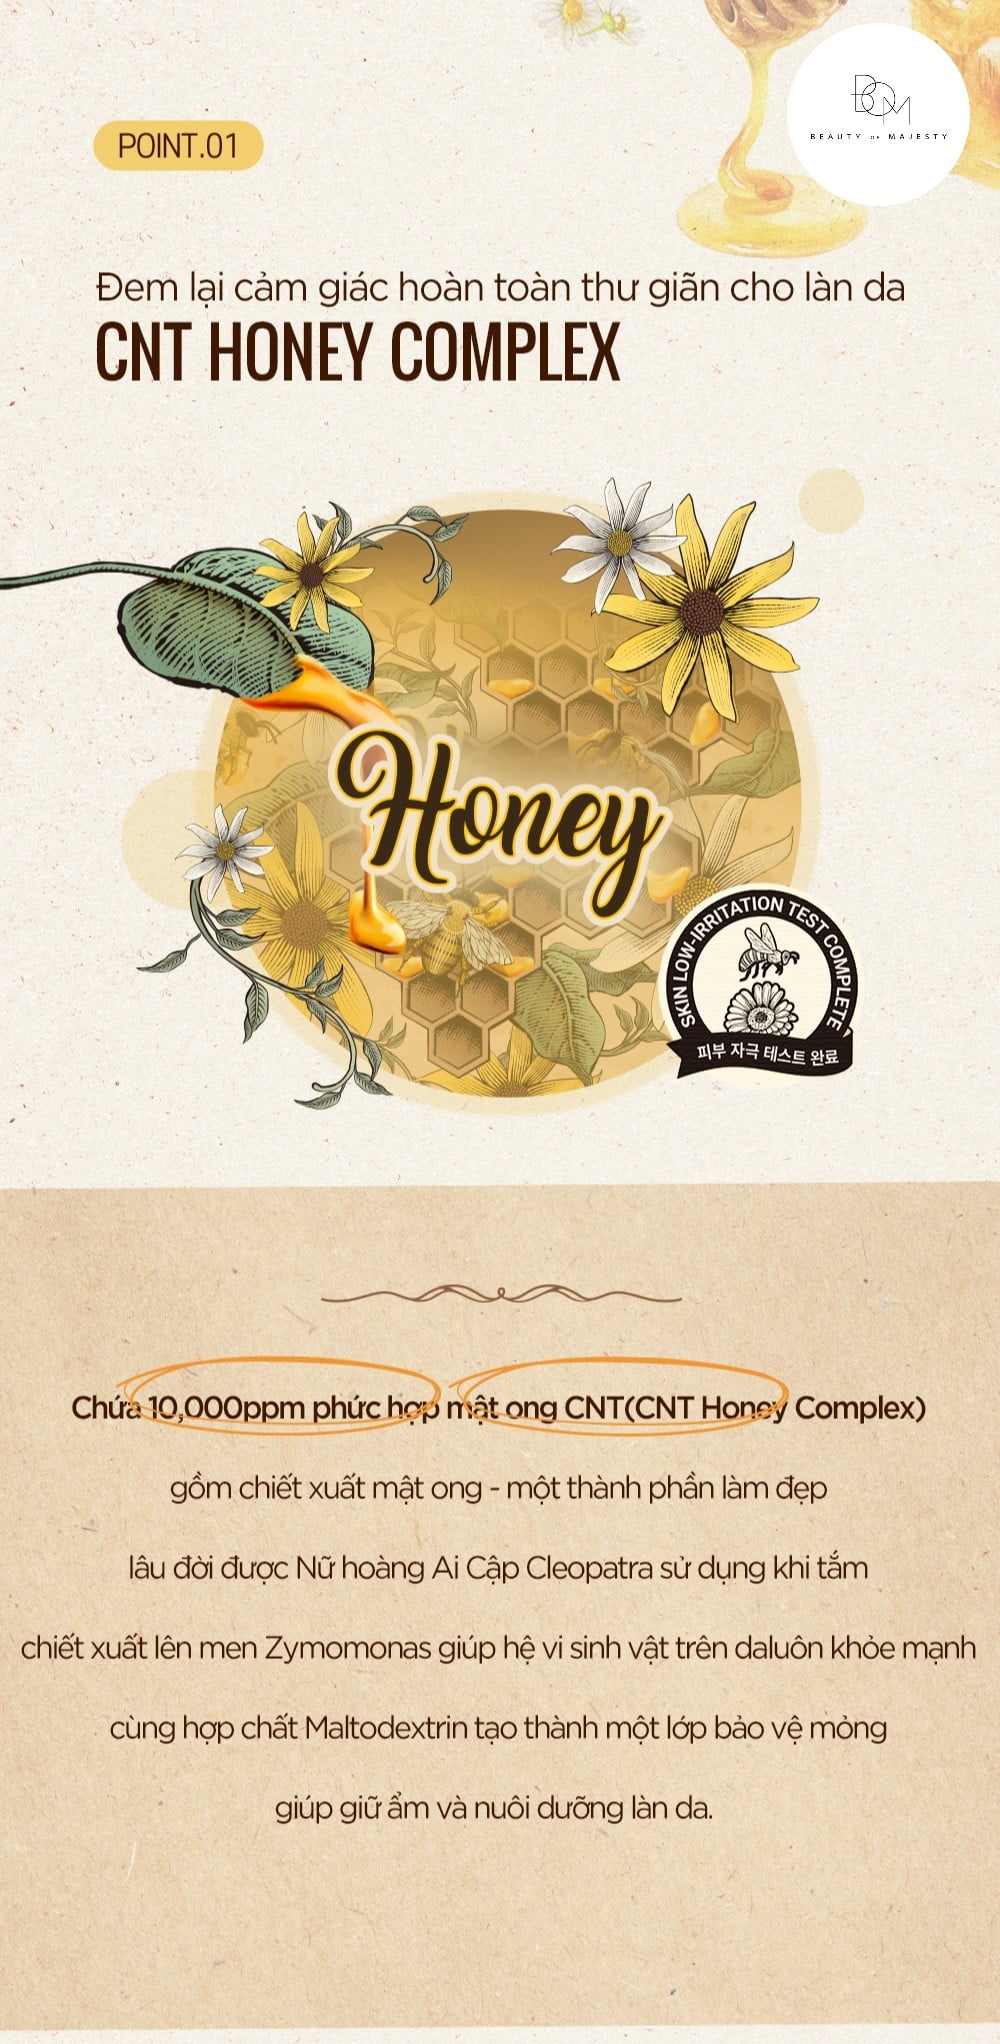 Nguồn gốc mật ong của sản phẩm